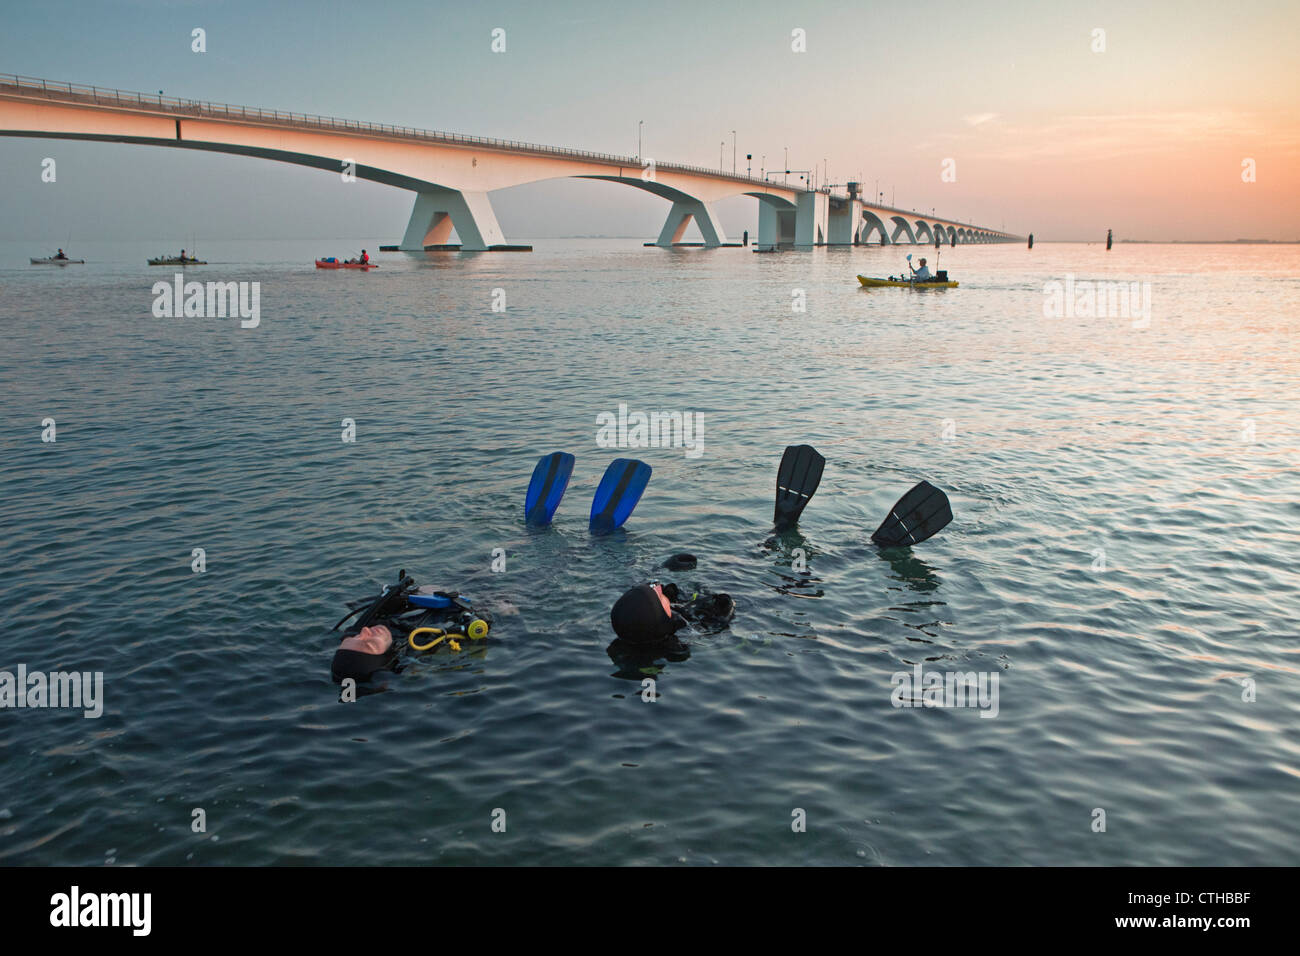 The Netherlands, Zierikzee, bridge called Zeelandbrug. Divers relaxing. Stock Photo